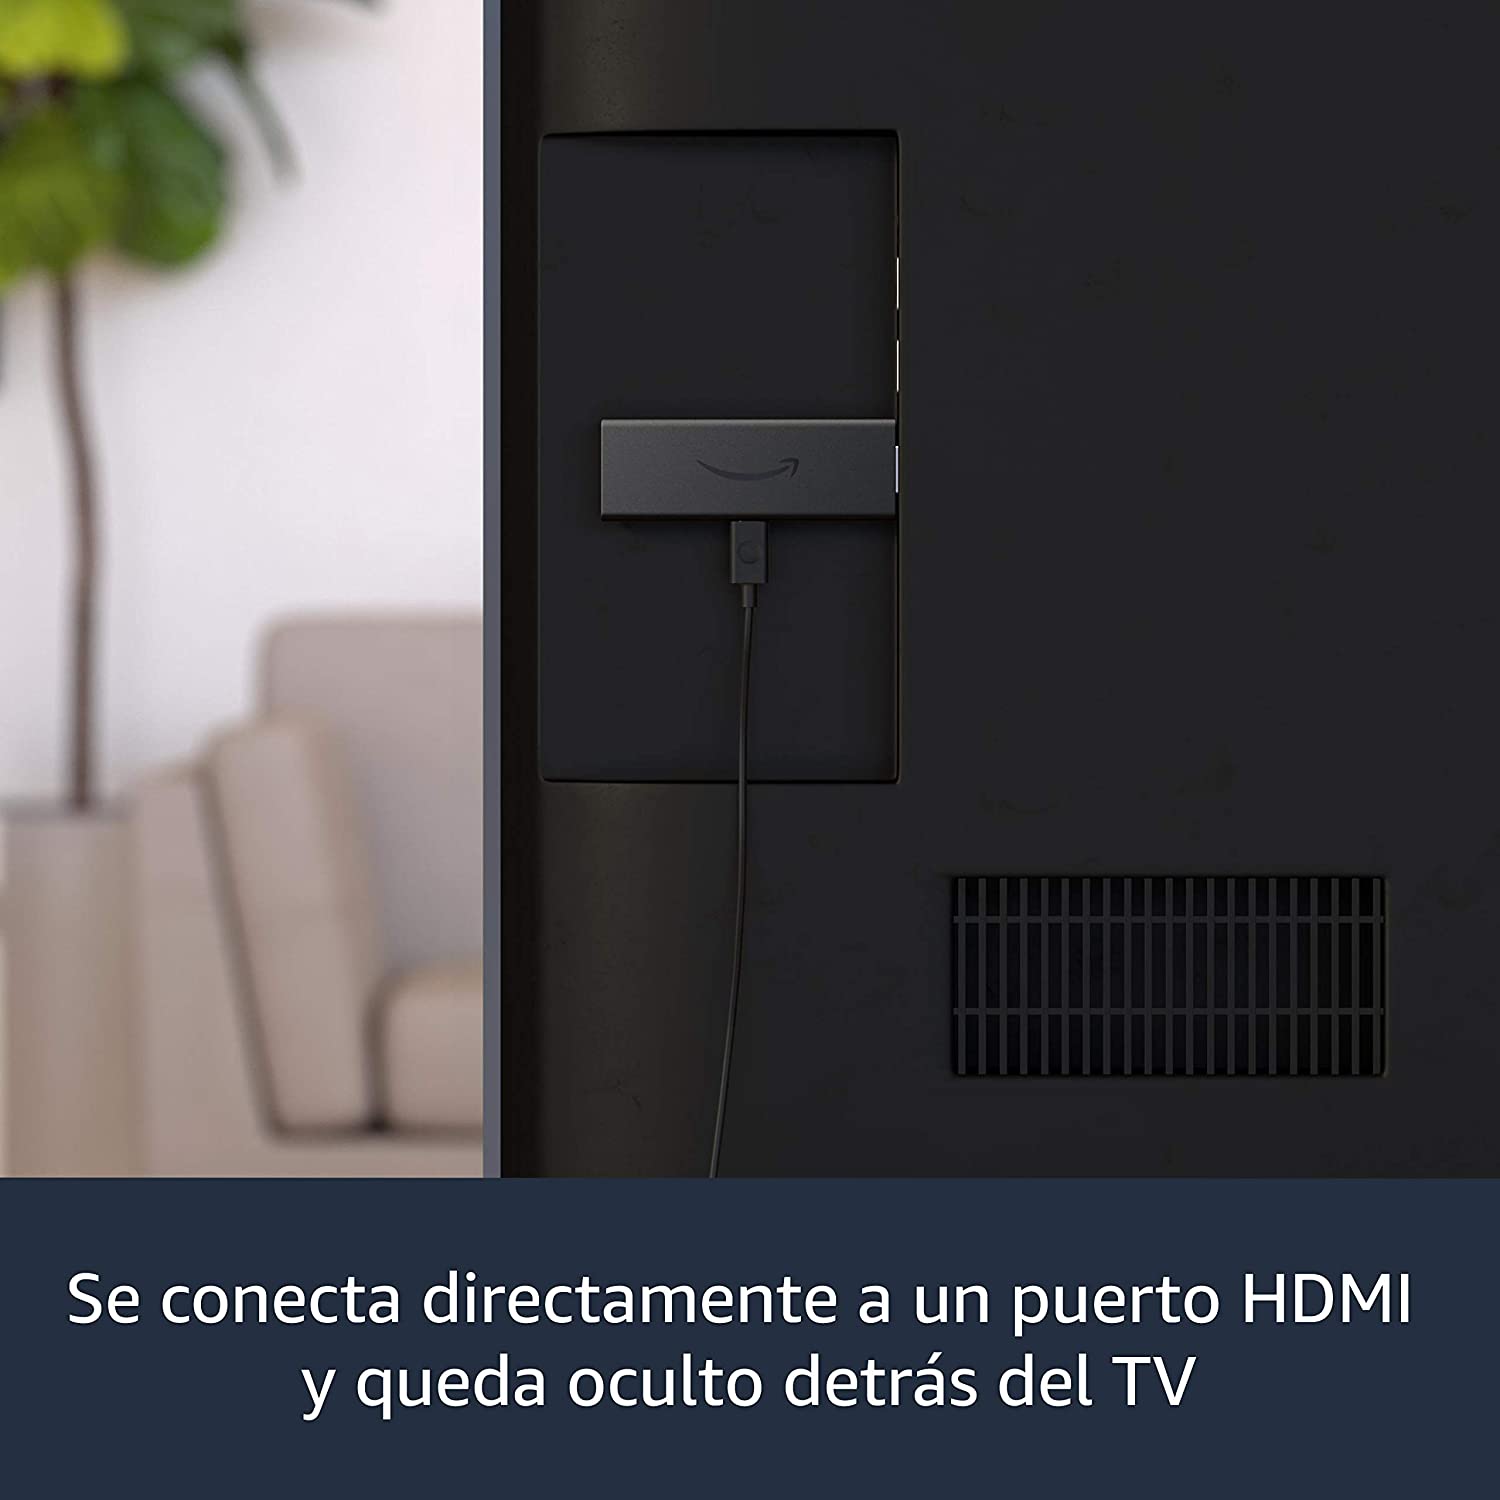 Fire TV Stick 3era Generación con Alexa Voice Remote (incluye controles de TV) | Dispositivo de streaming en HD